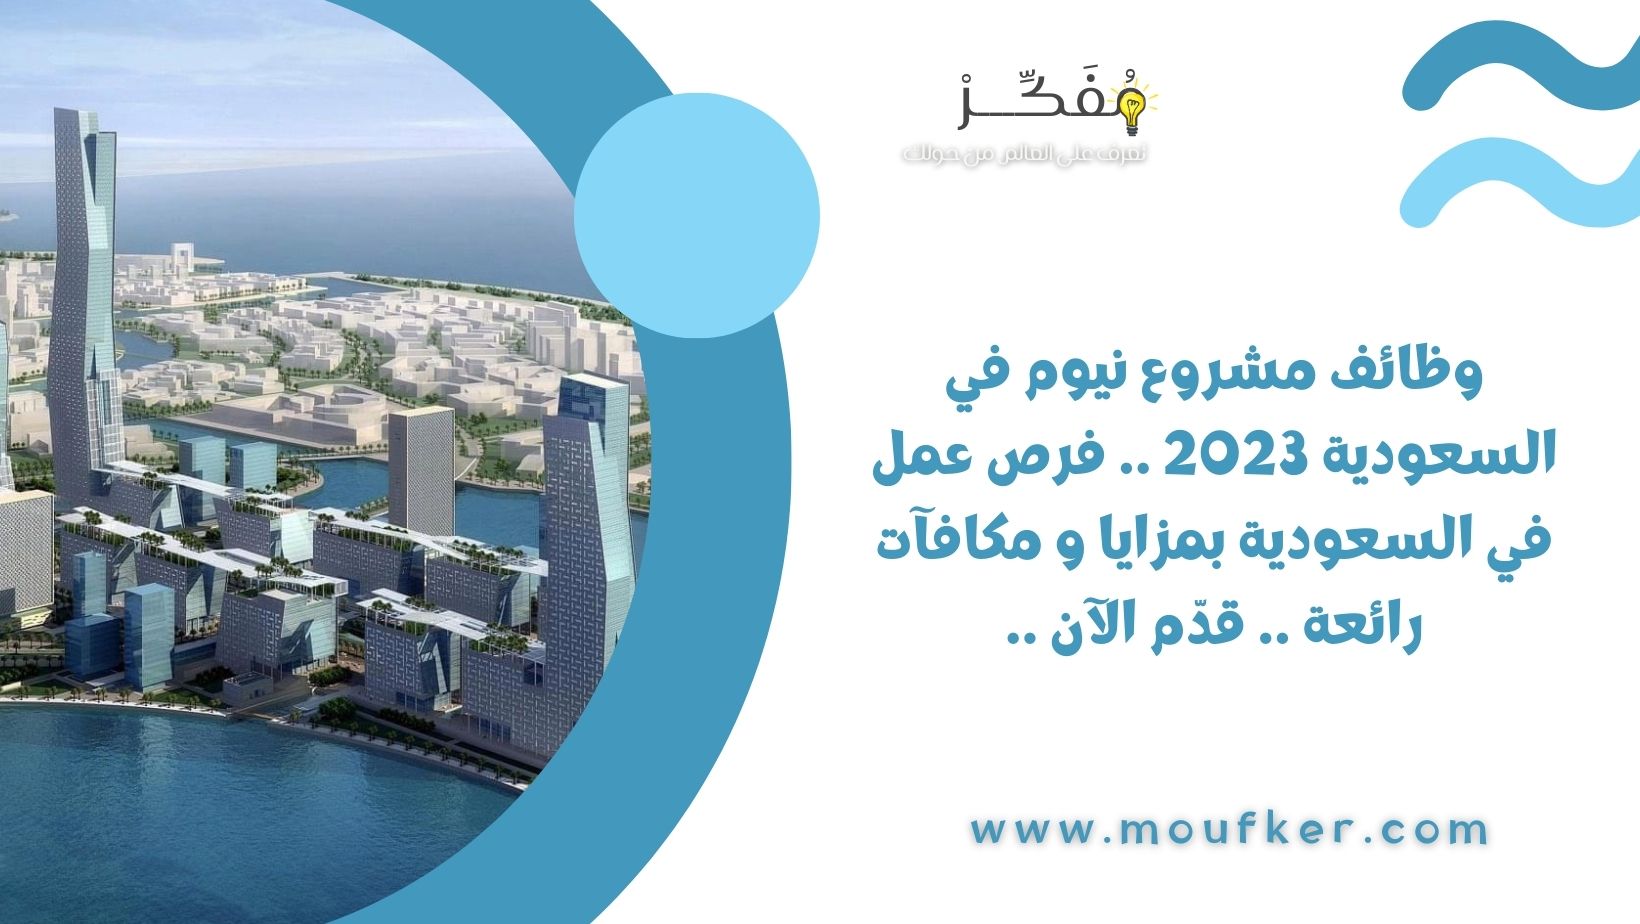 وظائف مشروع نيوم في السعودية 2023 .. فرص عمل في السعودية بمزايا و مكافآت رائعة .. قدّم الآن ..